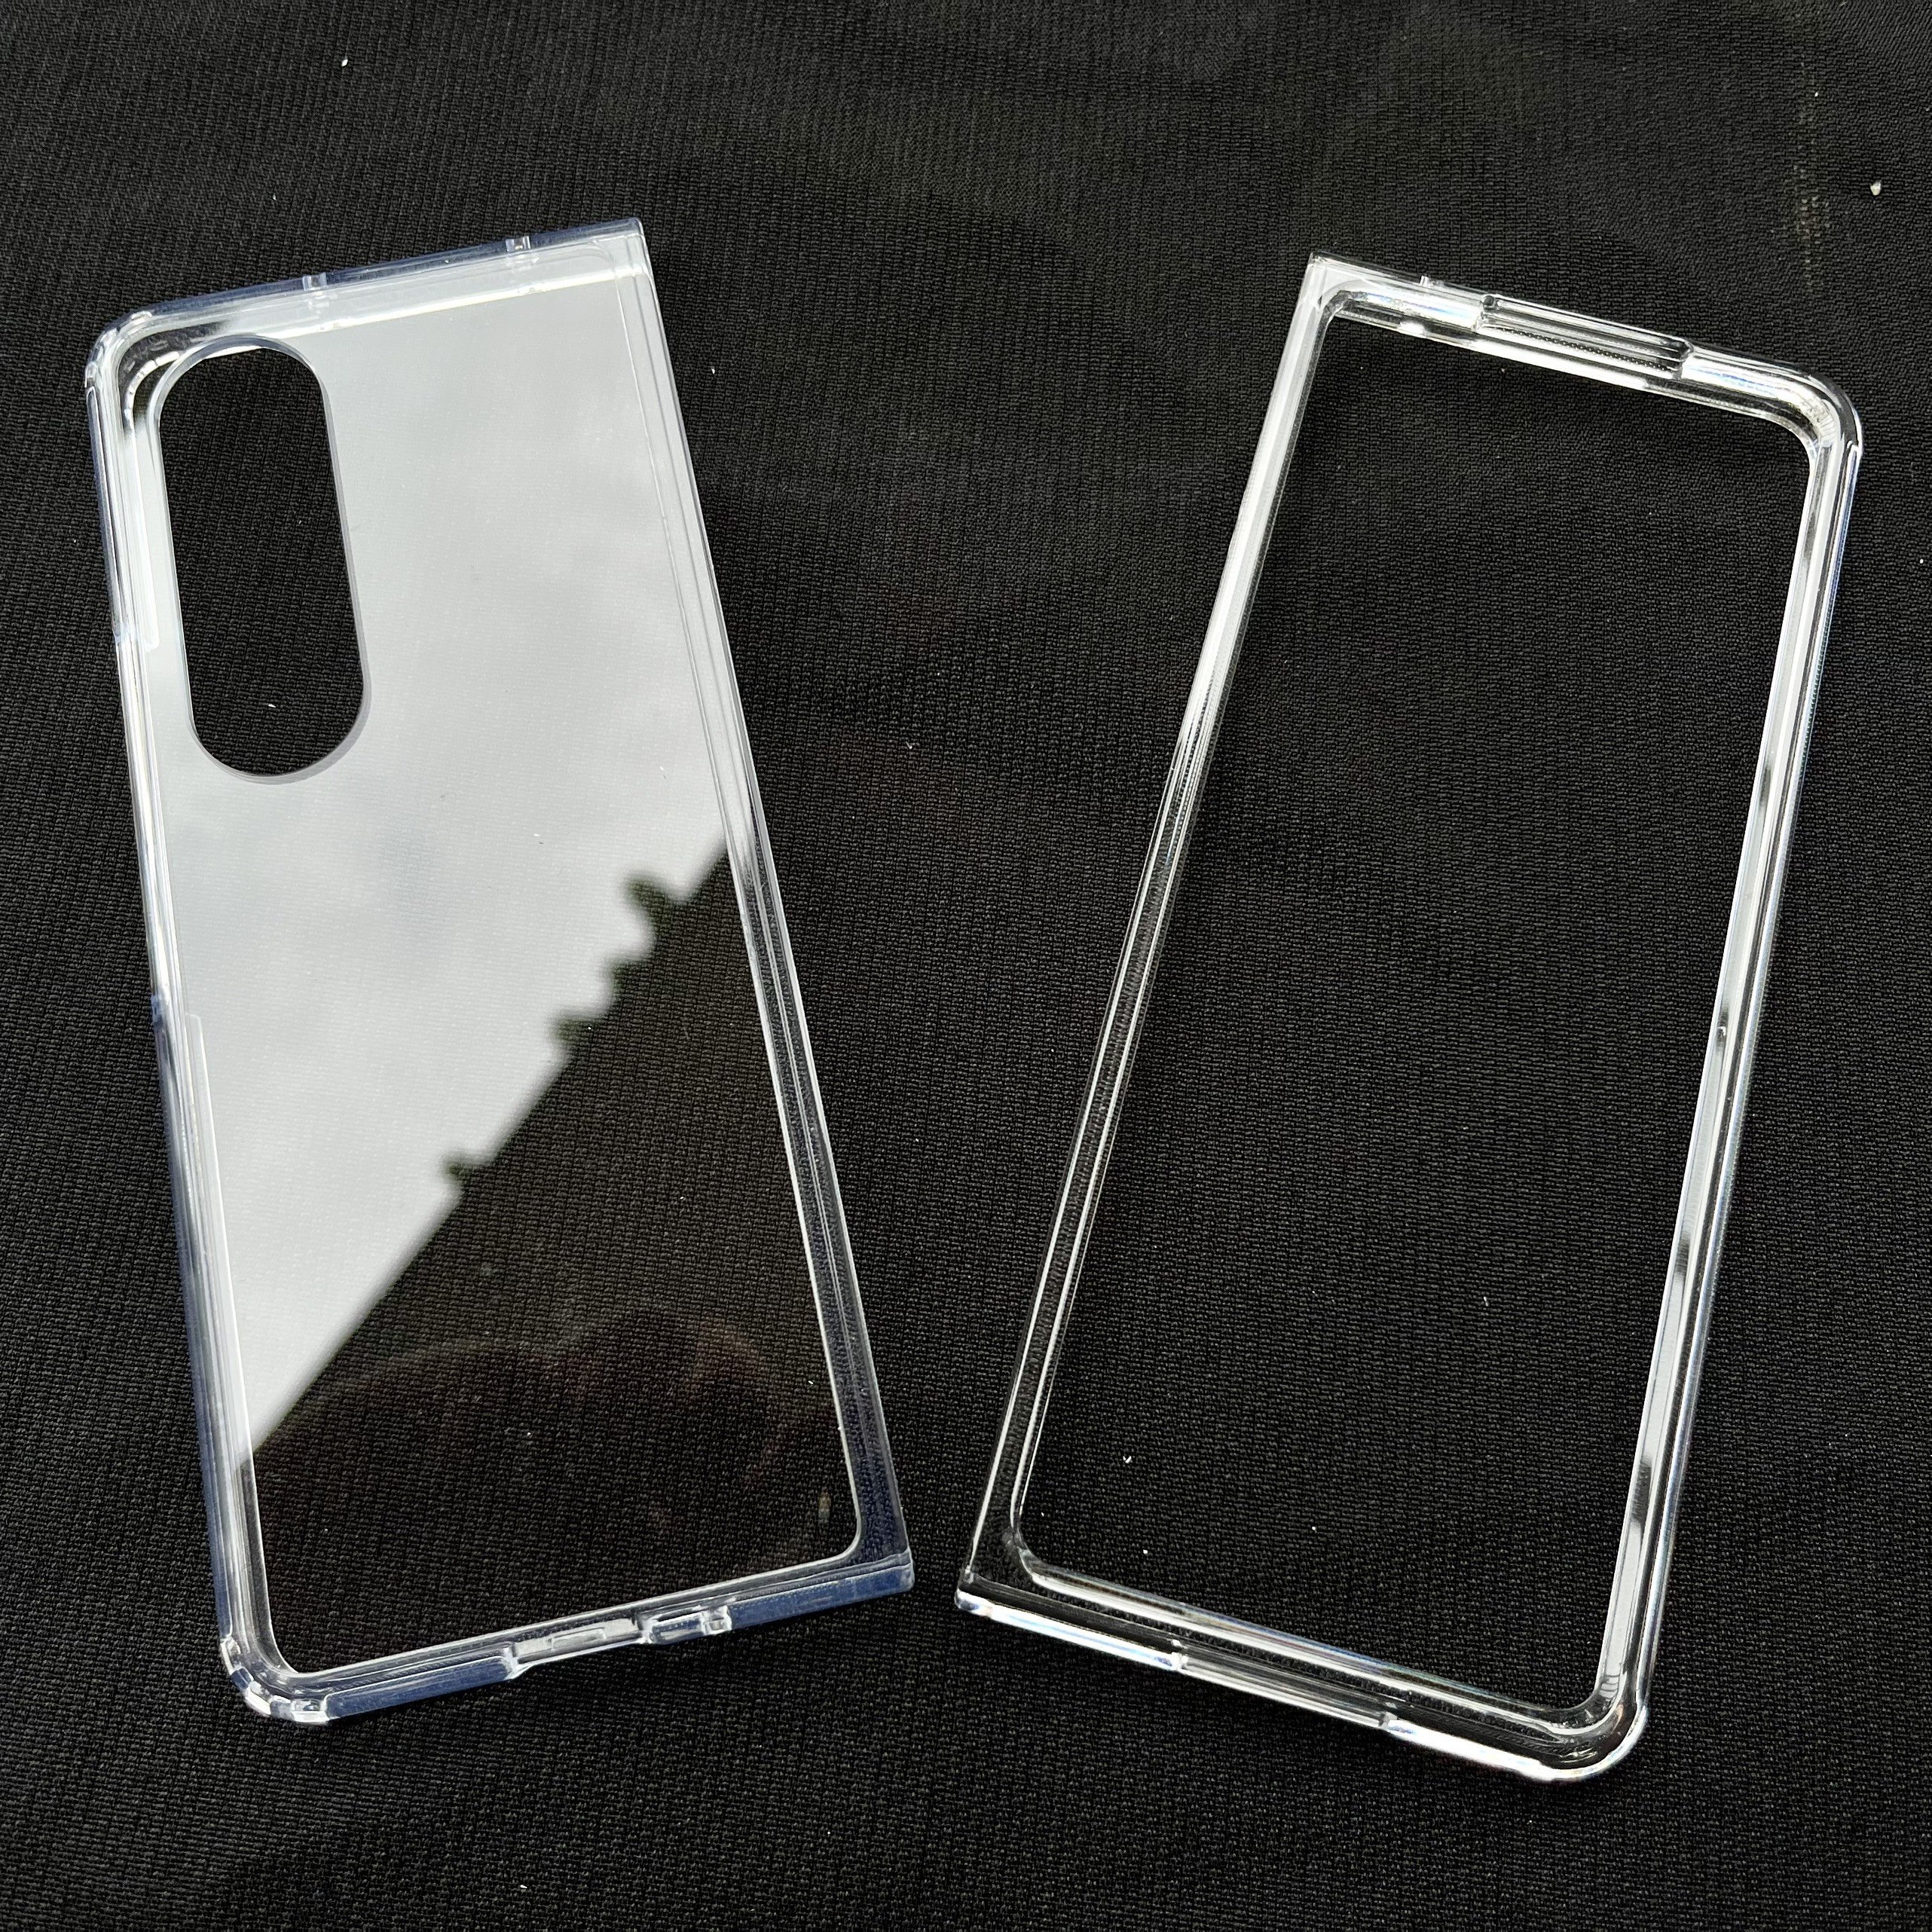 Ốp Lưng Trong Suốt UNIQ Hybrid LifePro Xtreme Dành Cho Samsung Galaxy Z Fold 4 5G - Hàng Chính Hãng